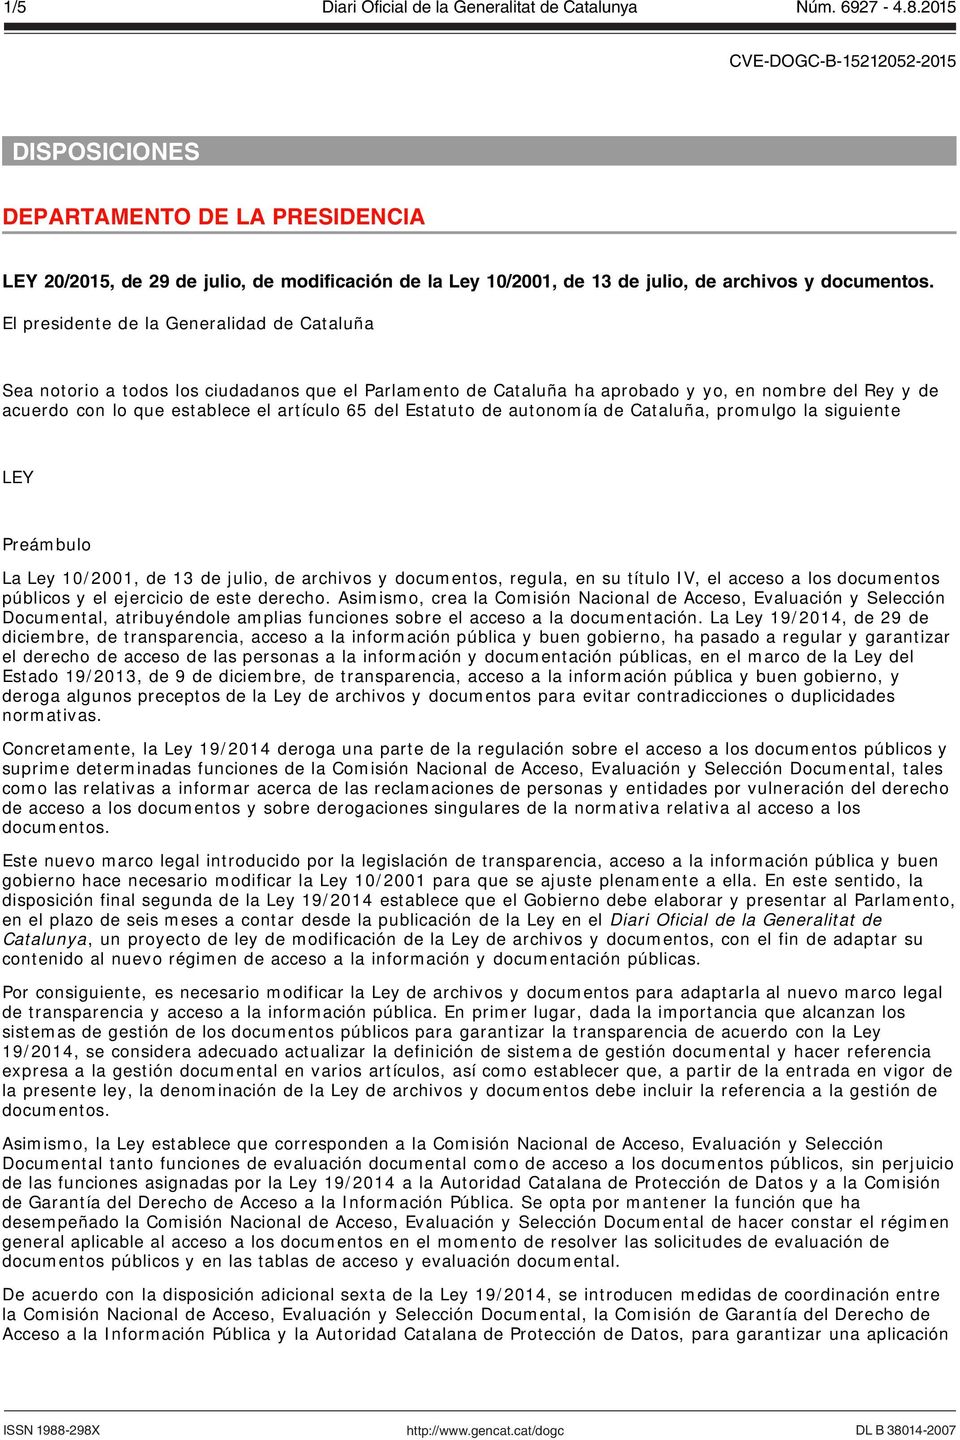 Estatuto de autonomía de Cataluña, promulgo la siguiente LEY Preámbulo La Ley 10/2001, de 13 de julio, de archivos y documentos, regula, en su título IV, el acceso a los documentos públicos y el